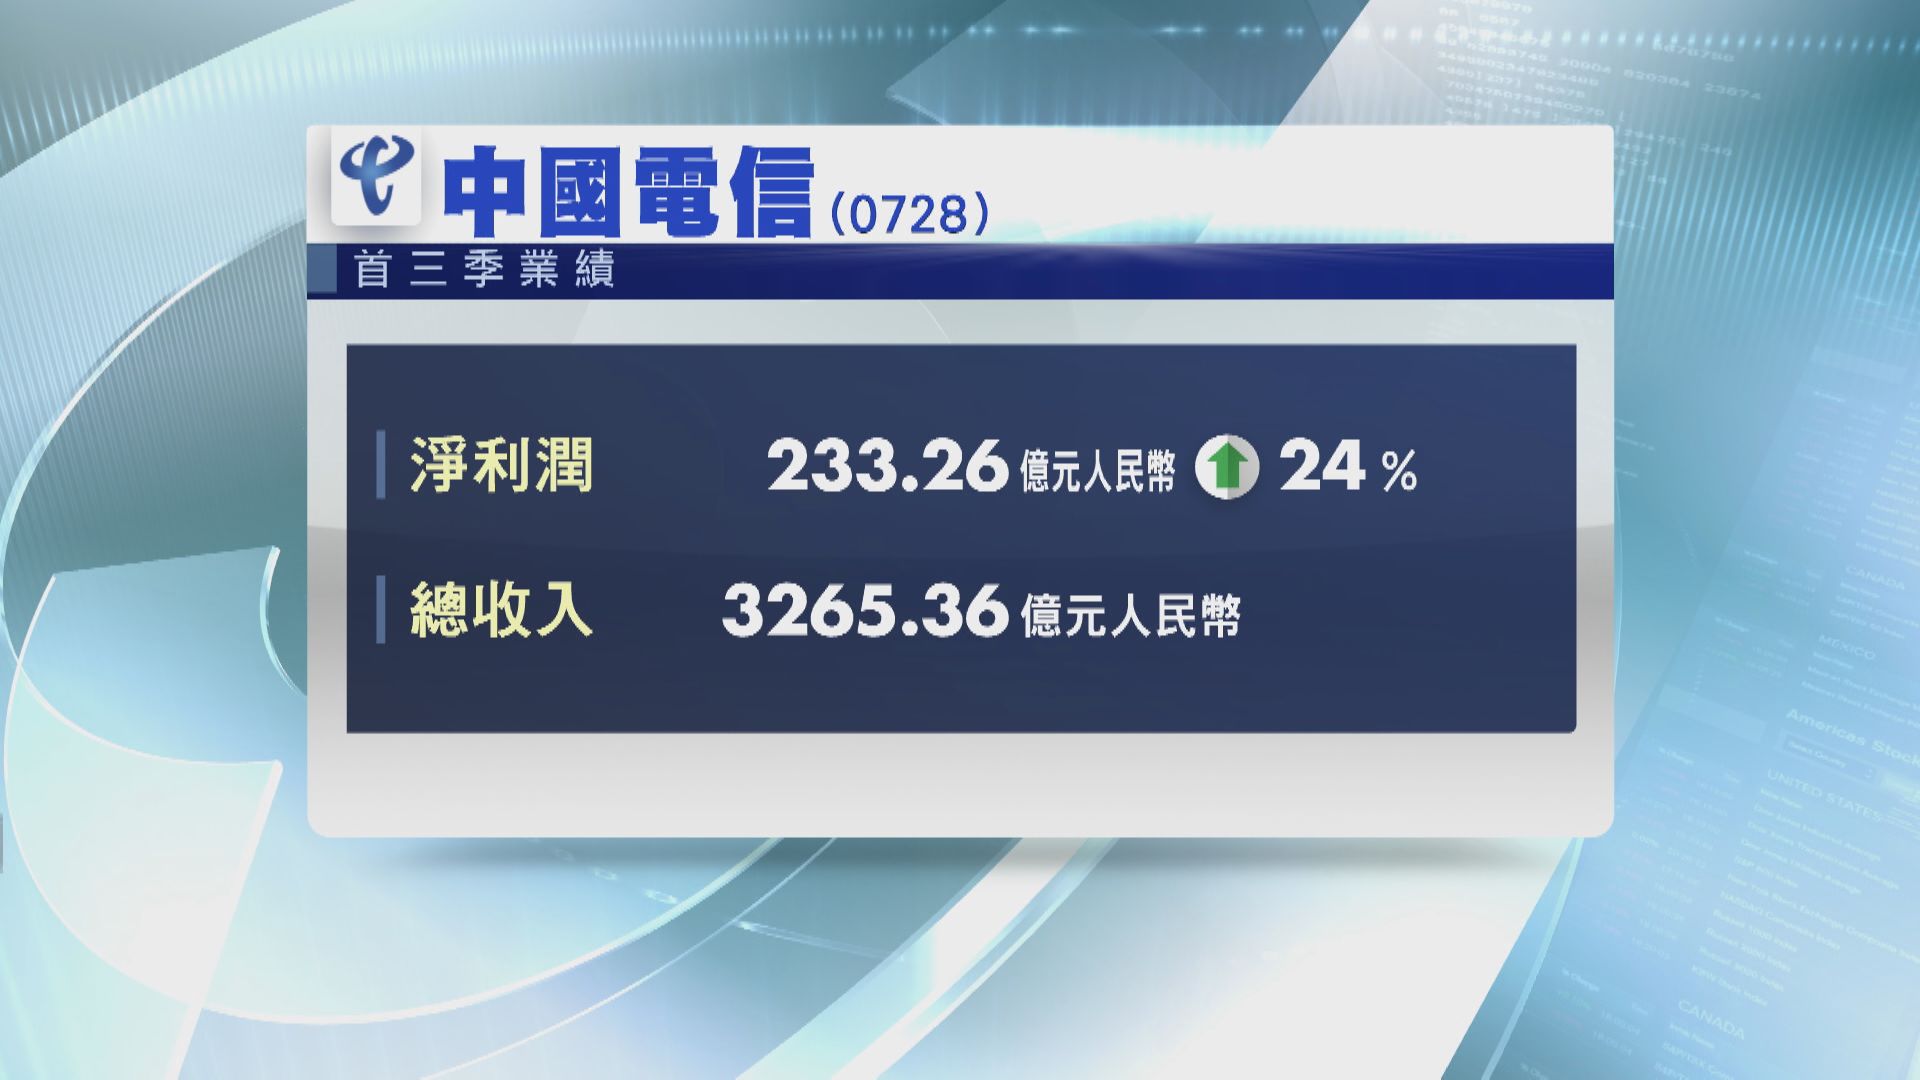 中電信首三季多賺24%